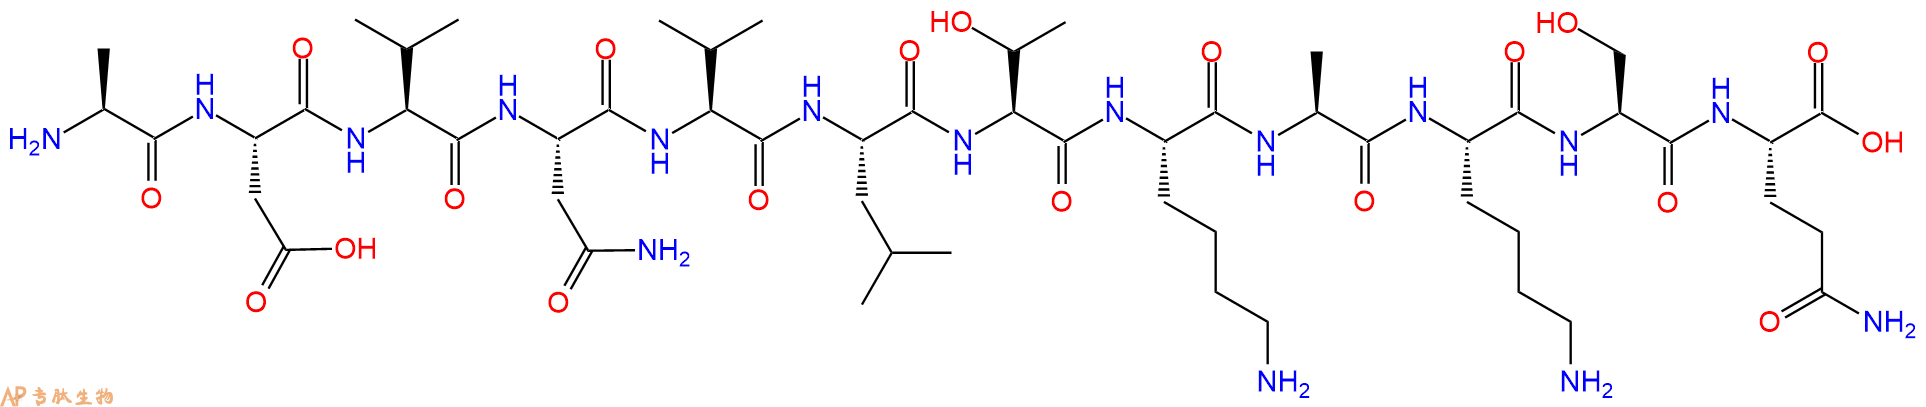 专肽生物产品甲状旁腺激素 pTH (73-84) (human)321957-35-1